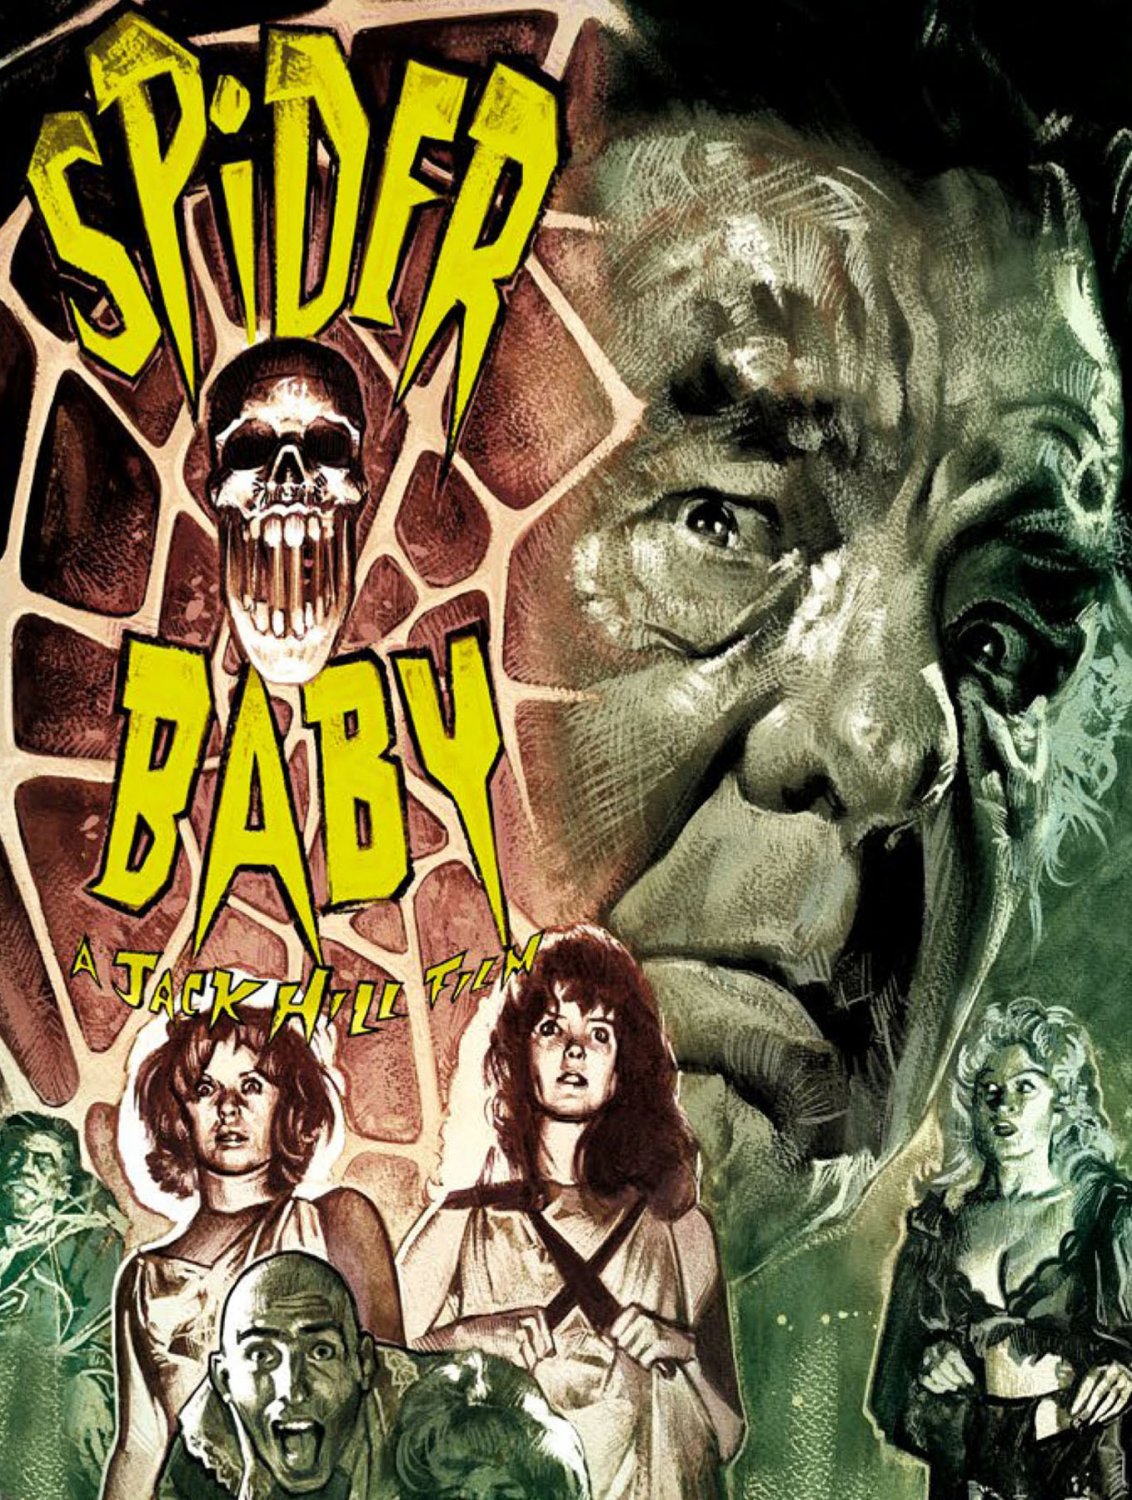 Spider Baby (DVD)